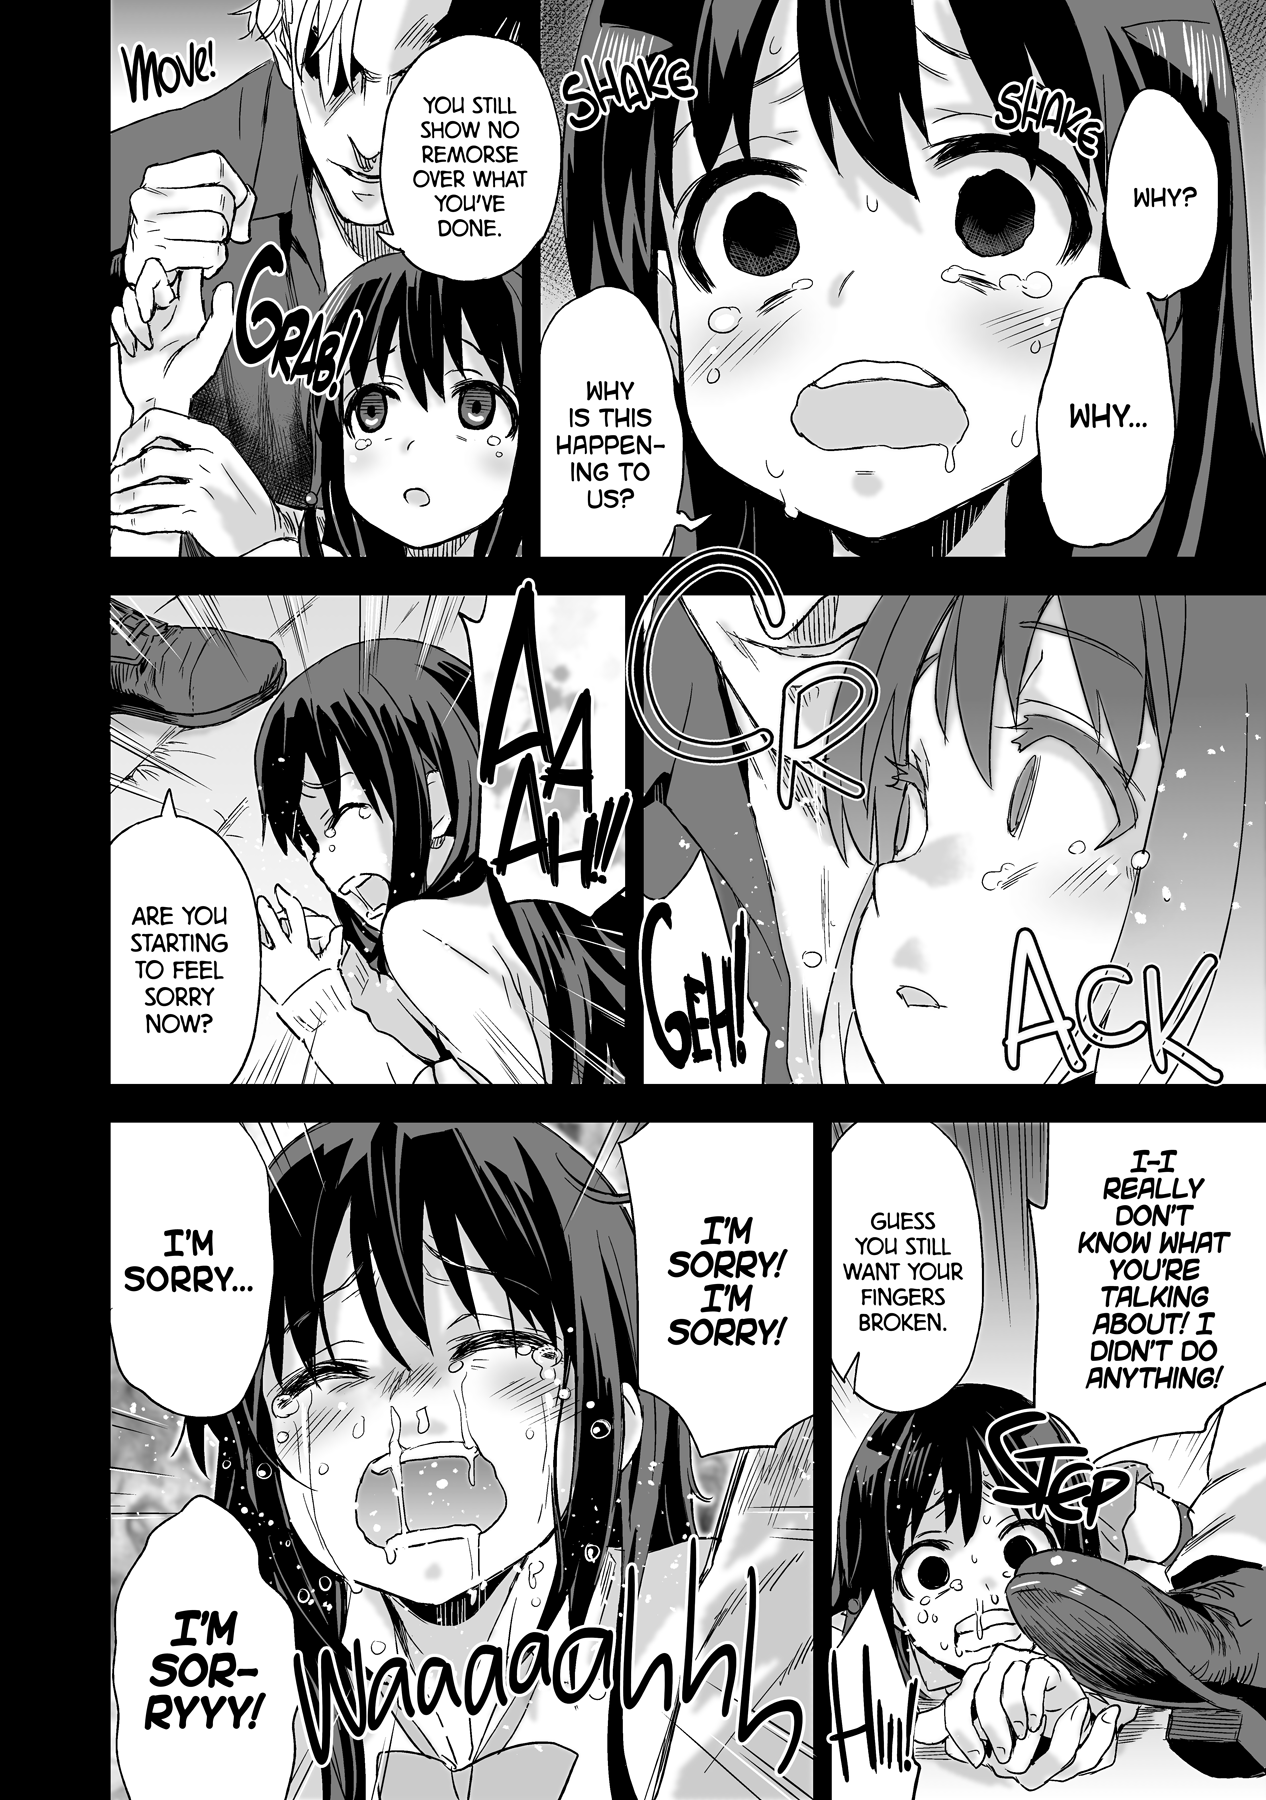 Victim Girls 13 - DRAGON SLAYER hentai manga picture 22